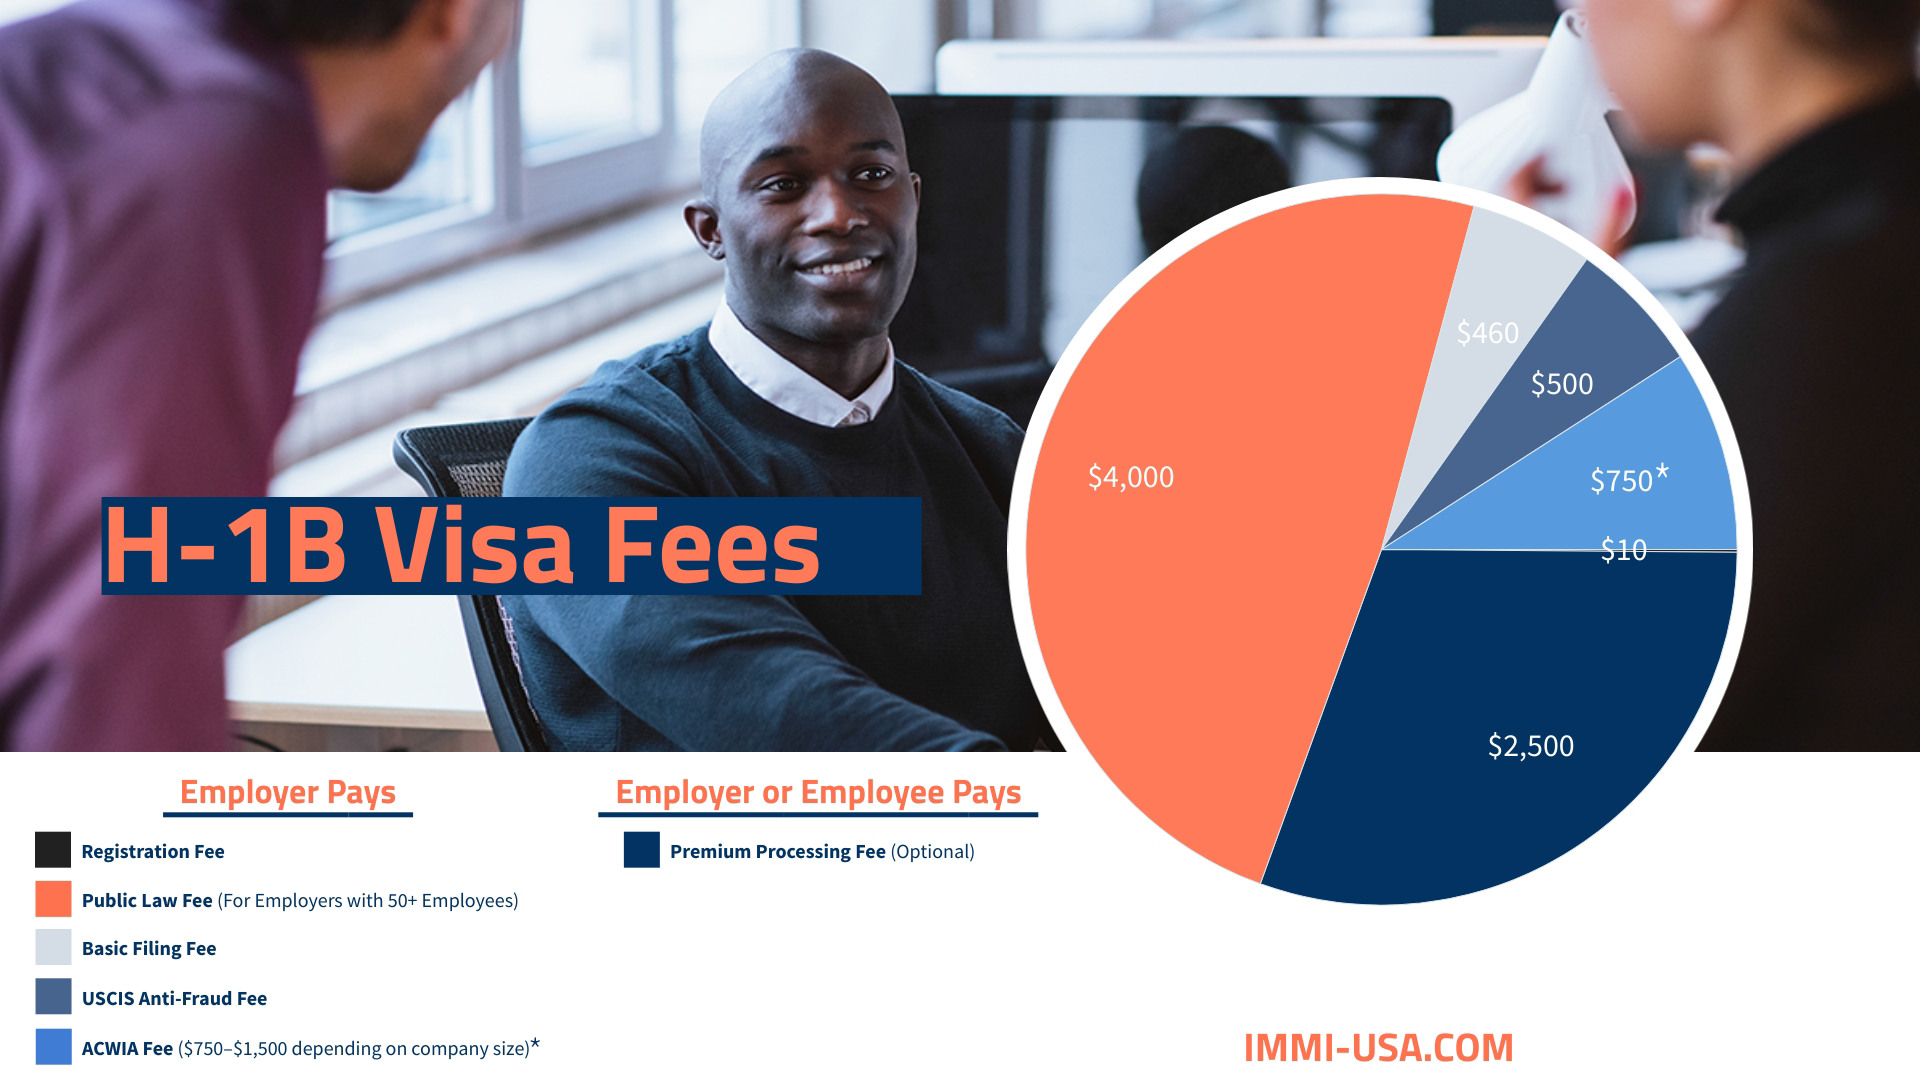 H-1B Visa Fees